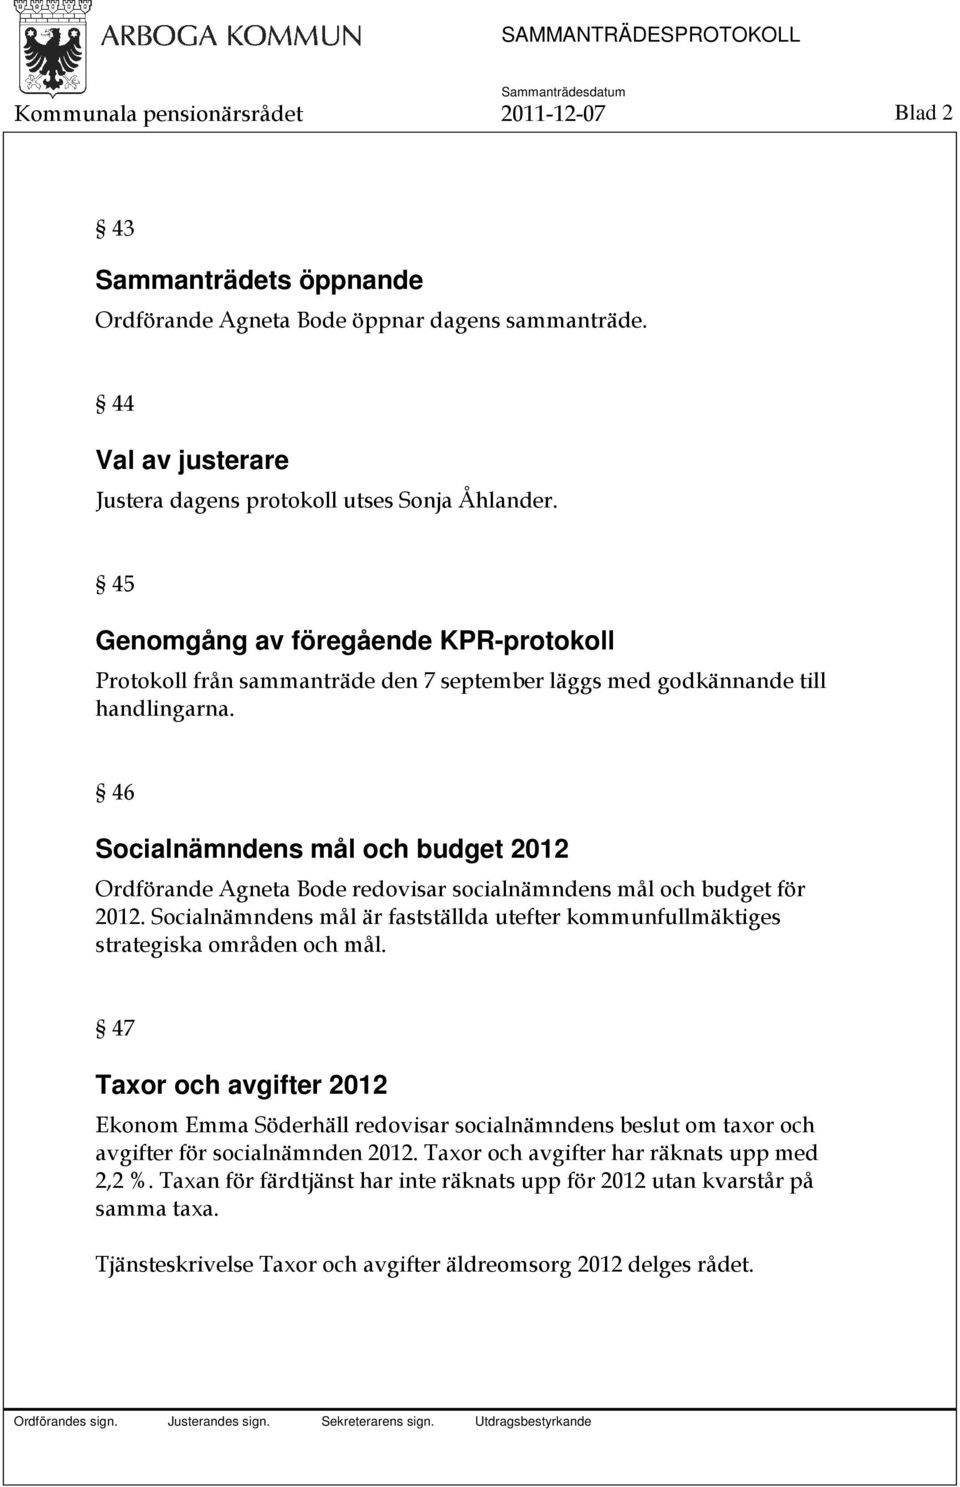 46 Socialnämndens mål och budget 2012 Ordförande Agneta Bode redovisar socialnämndens mål och budget för 2012. Socialnämndens mål är fastställda utefter kommunfullmäktiges strategiska områden och mål.